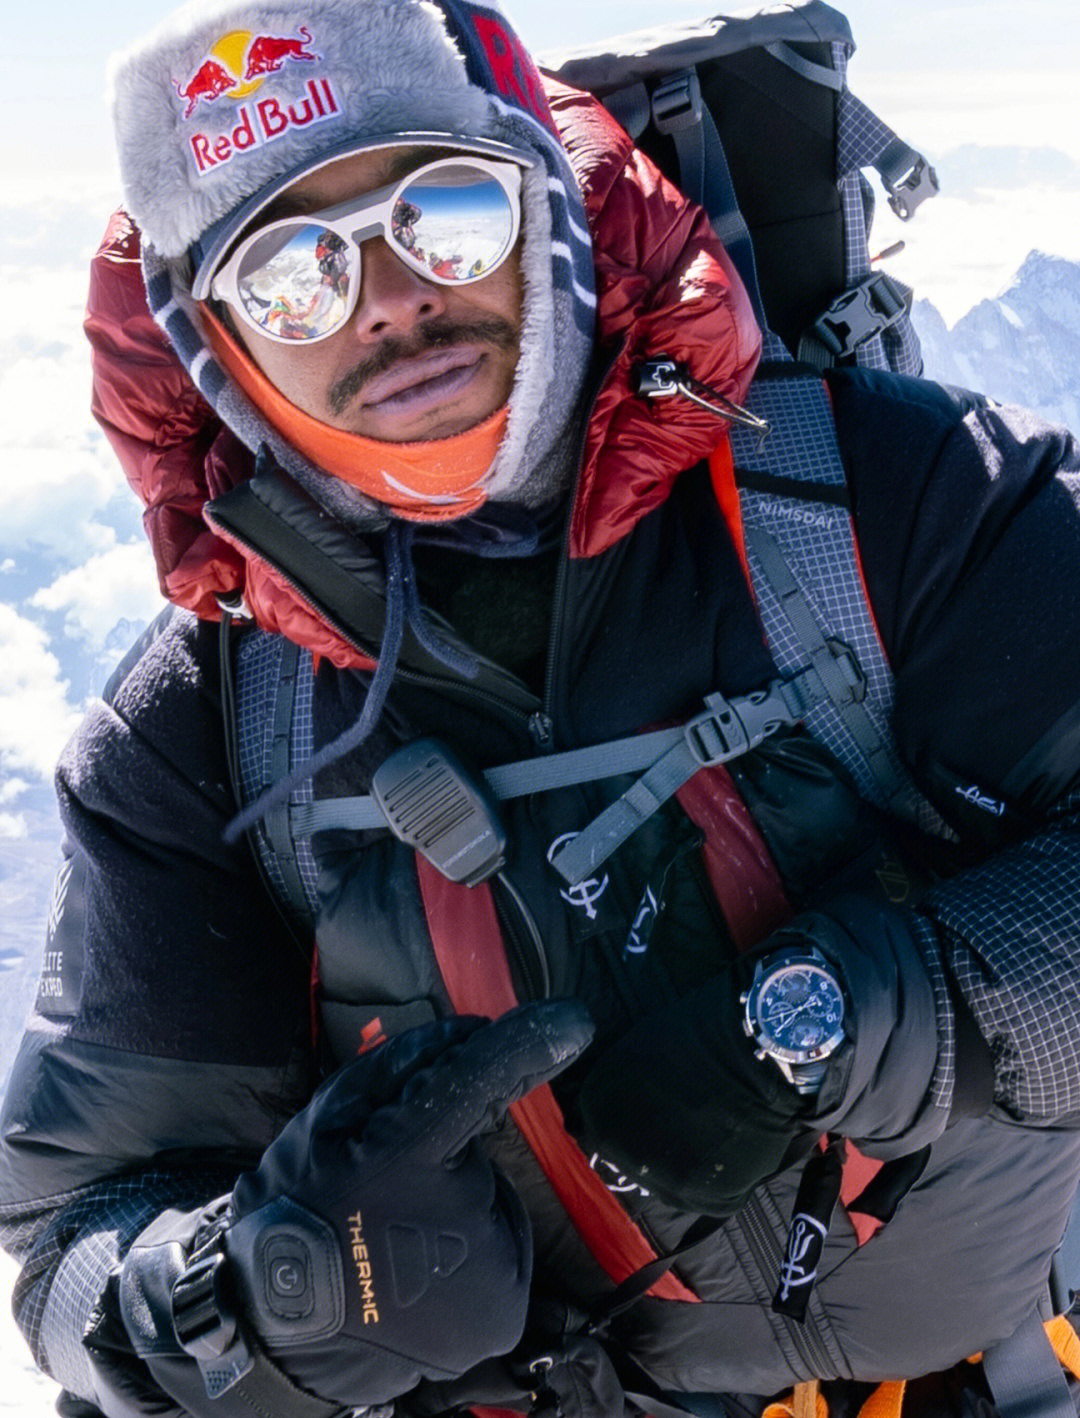 万宝龙表随尼泊尔登山家珠峰登顶成功